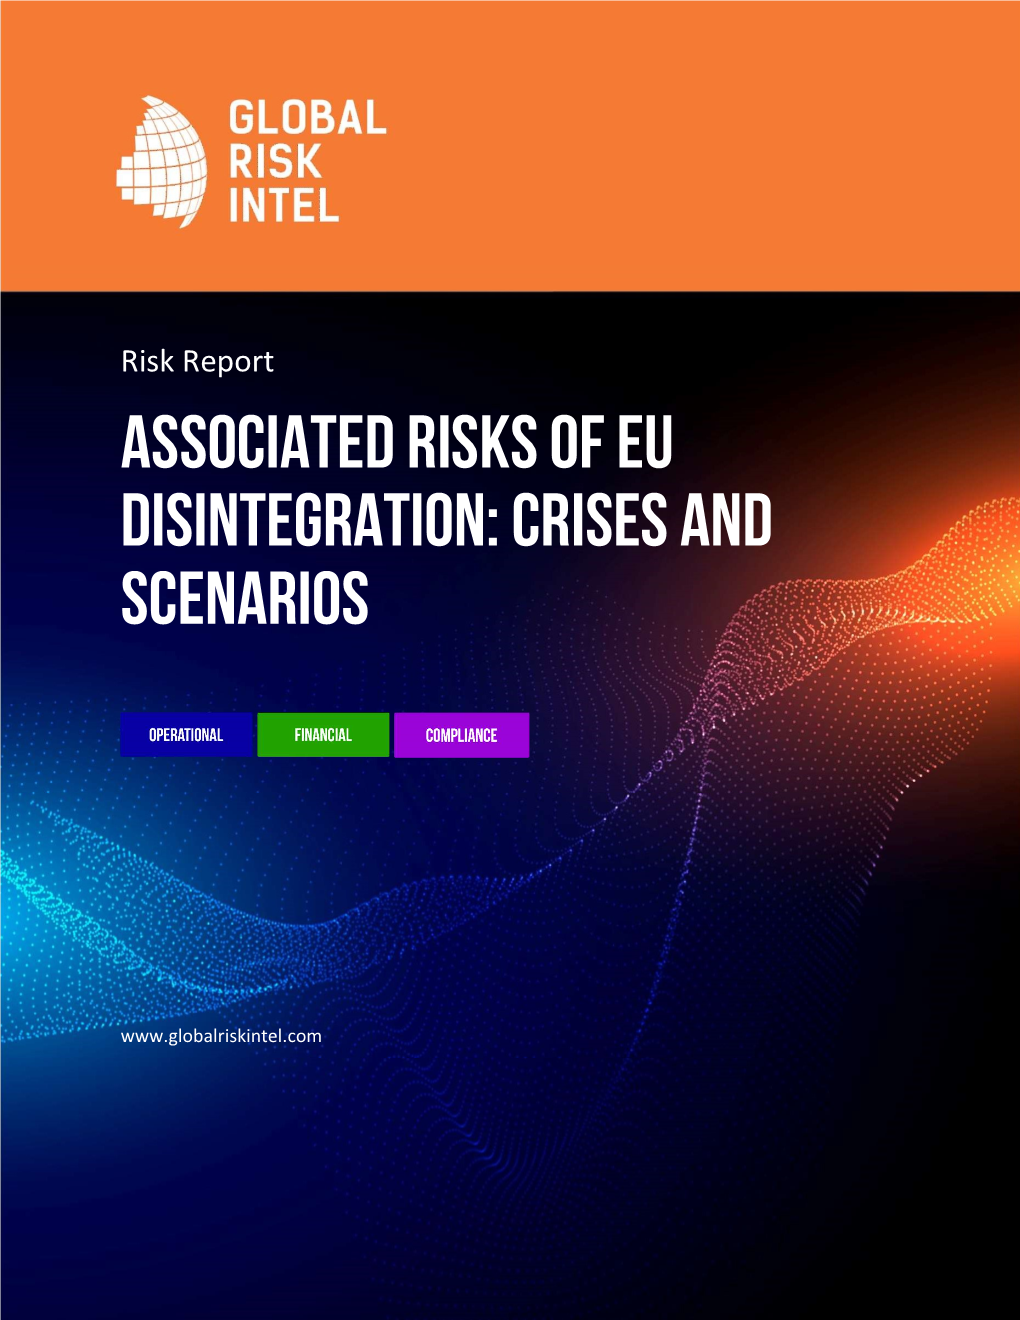 Associated Risks of EU Disintegration: Crises and Scenarios